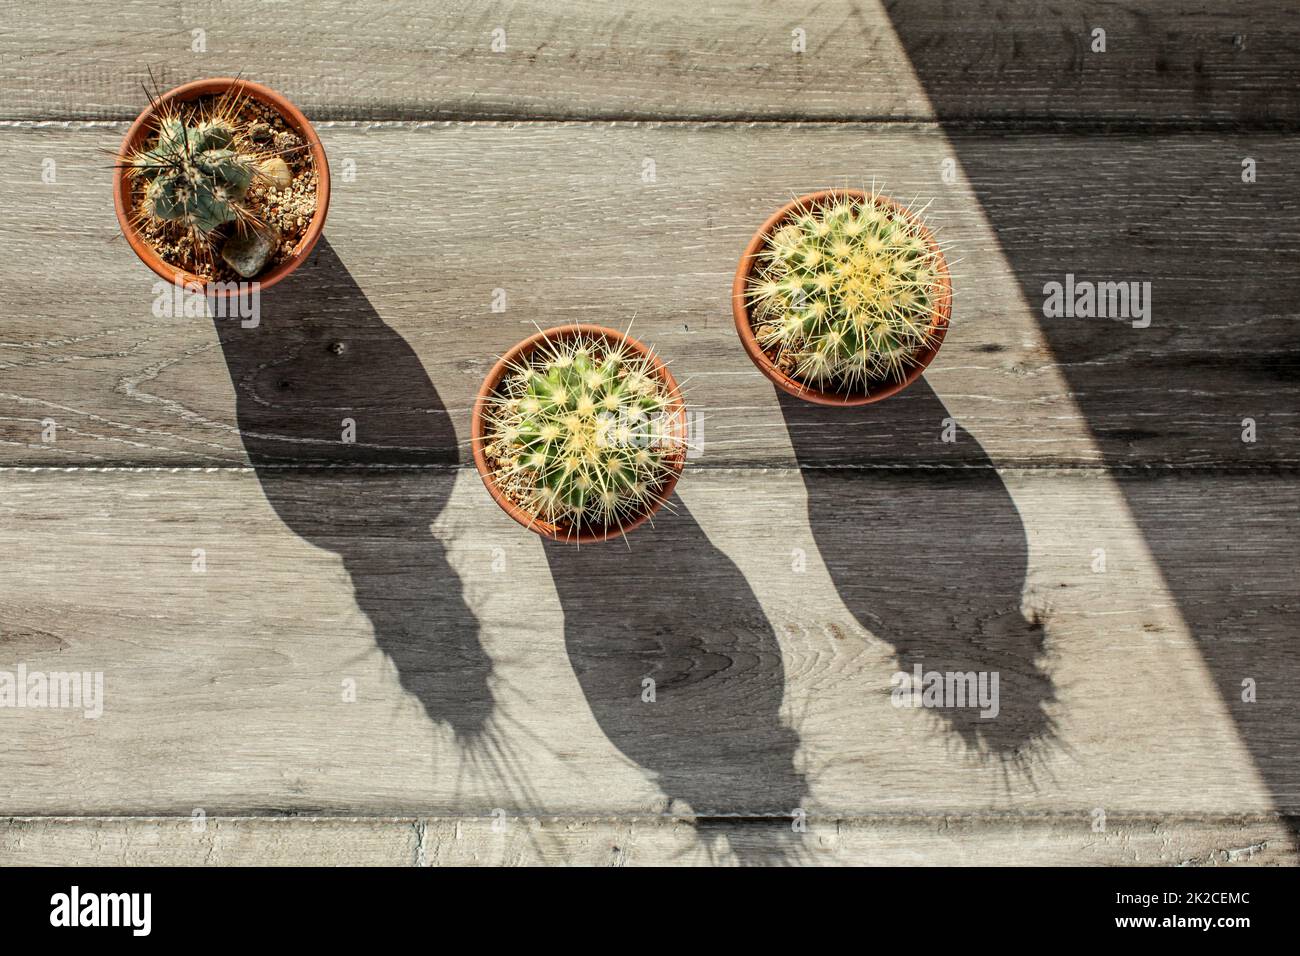 Tischplatte, drei kleine Kaktus Töpfe auf grau Holz Schreibtisch, Morgen Sonne werfen lange Schatten. Stockfoto